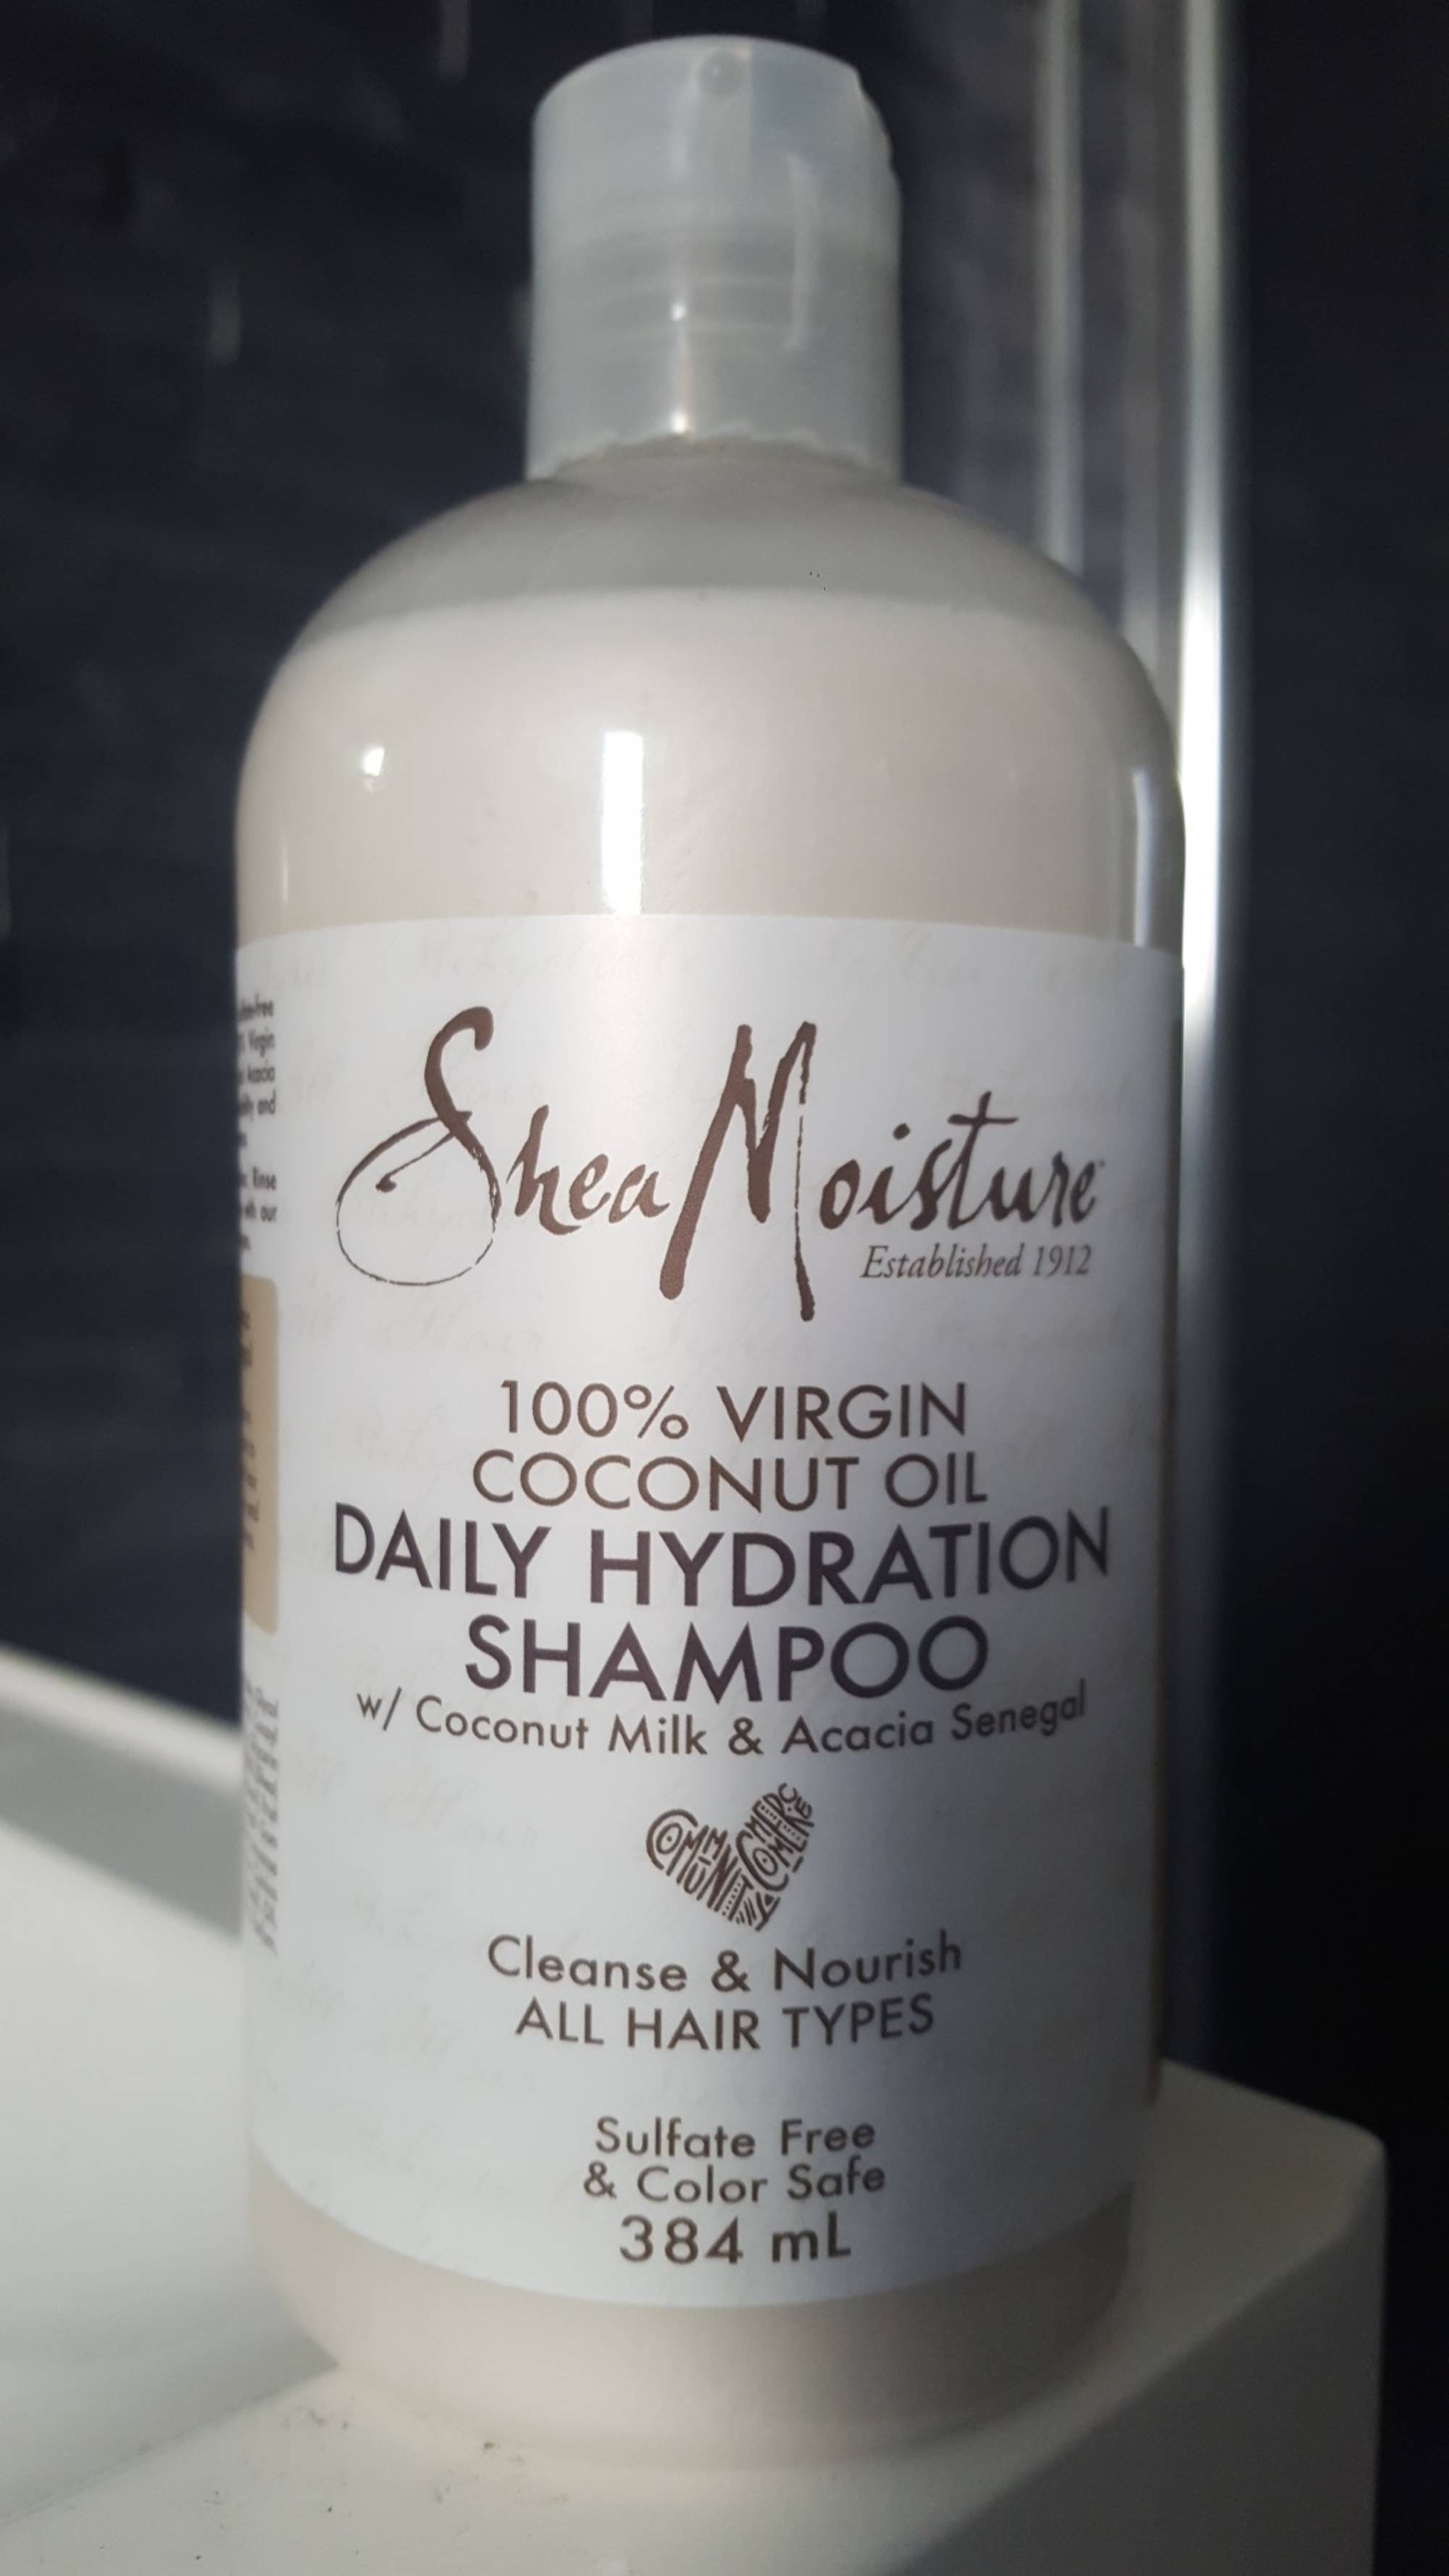 SHEA MOISTURE - Daily hydration shampoo